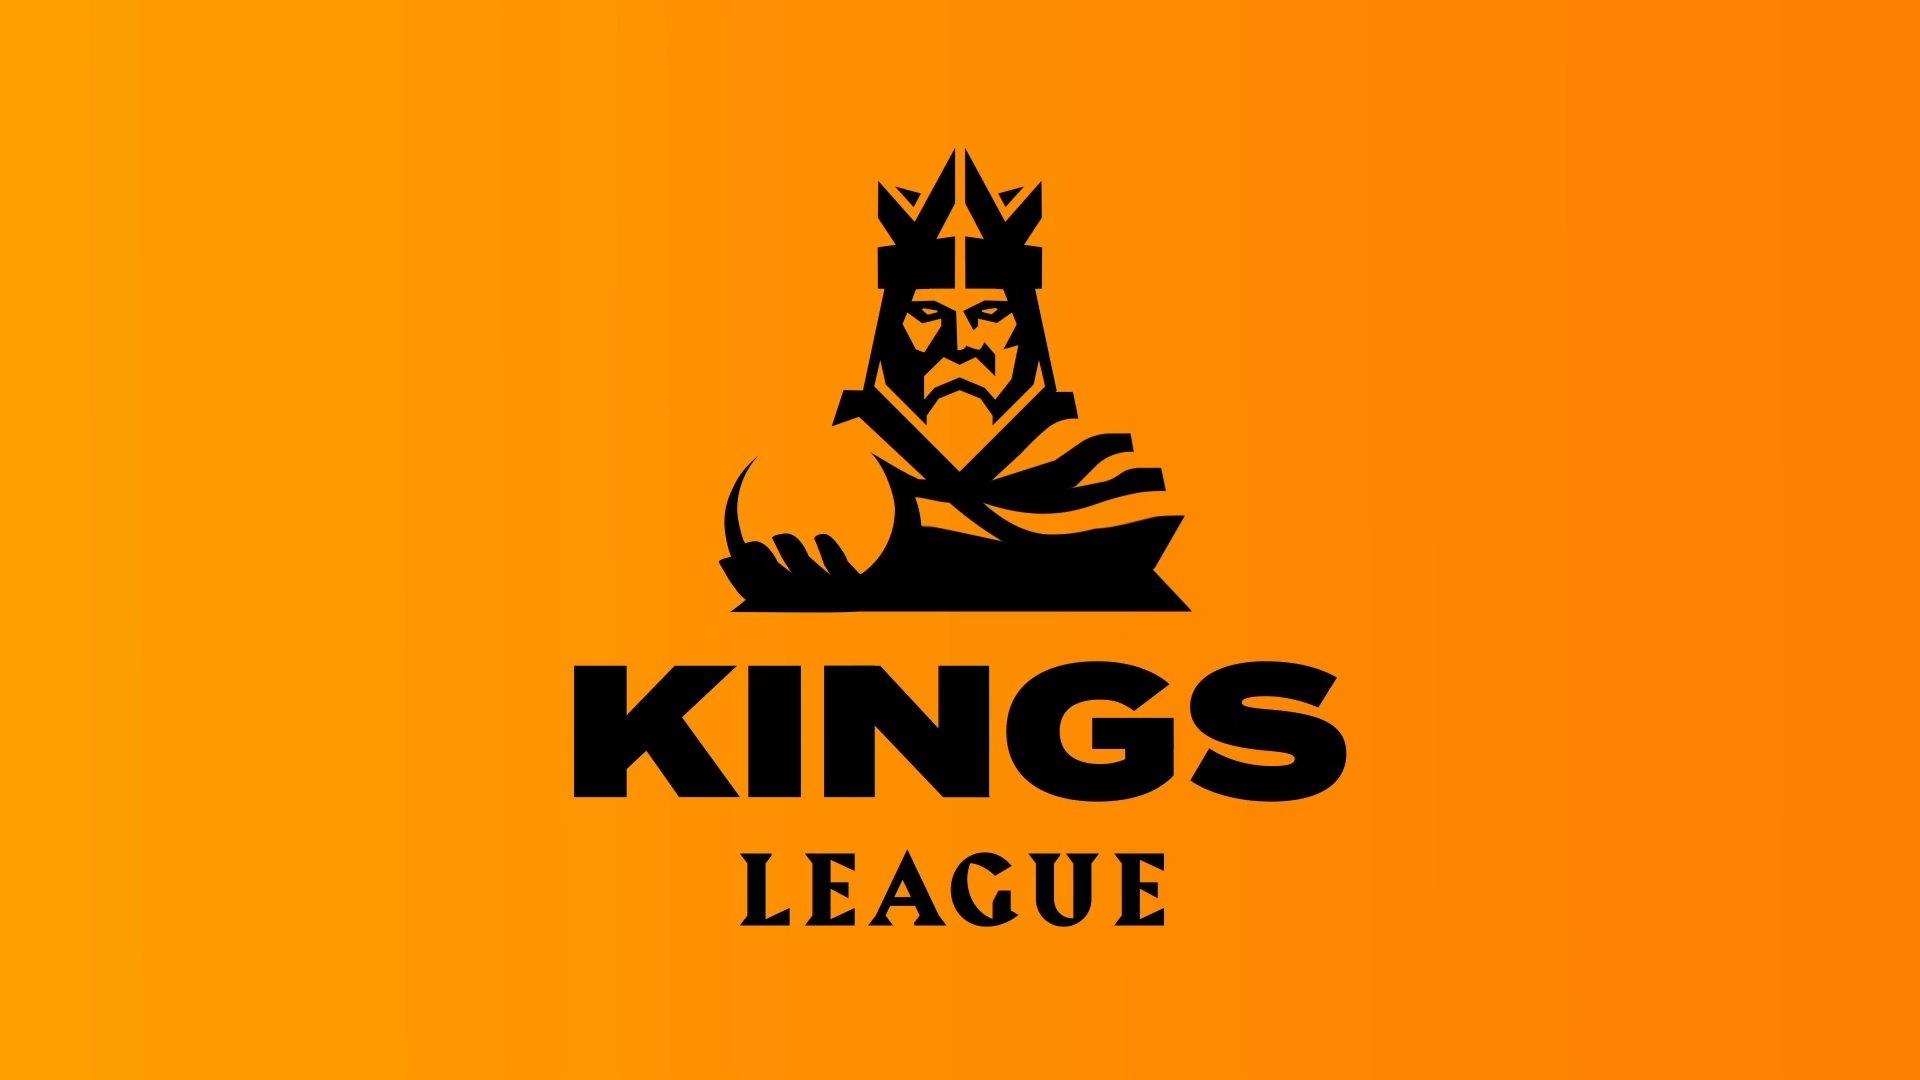 Pronto habrá más novedades sobre la Kings League